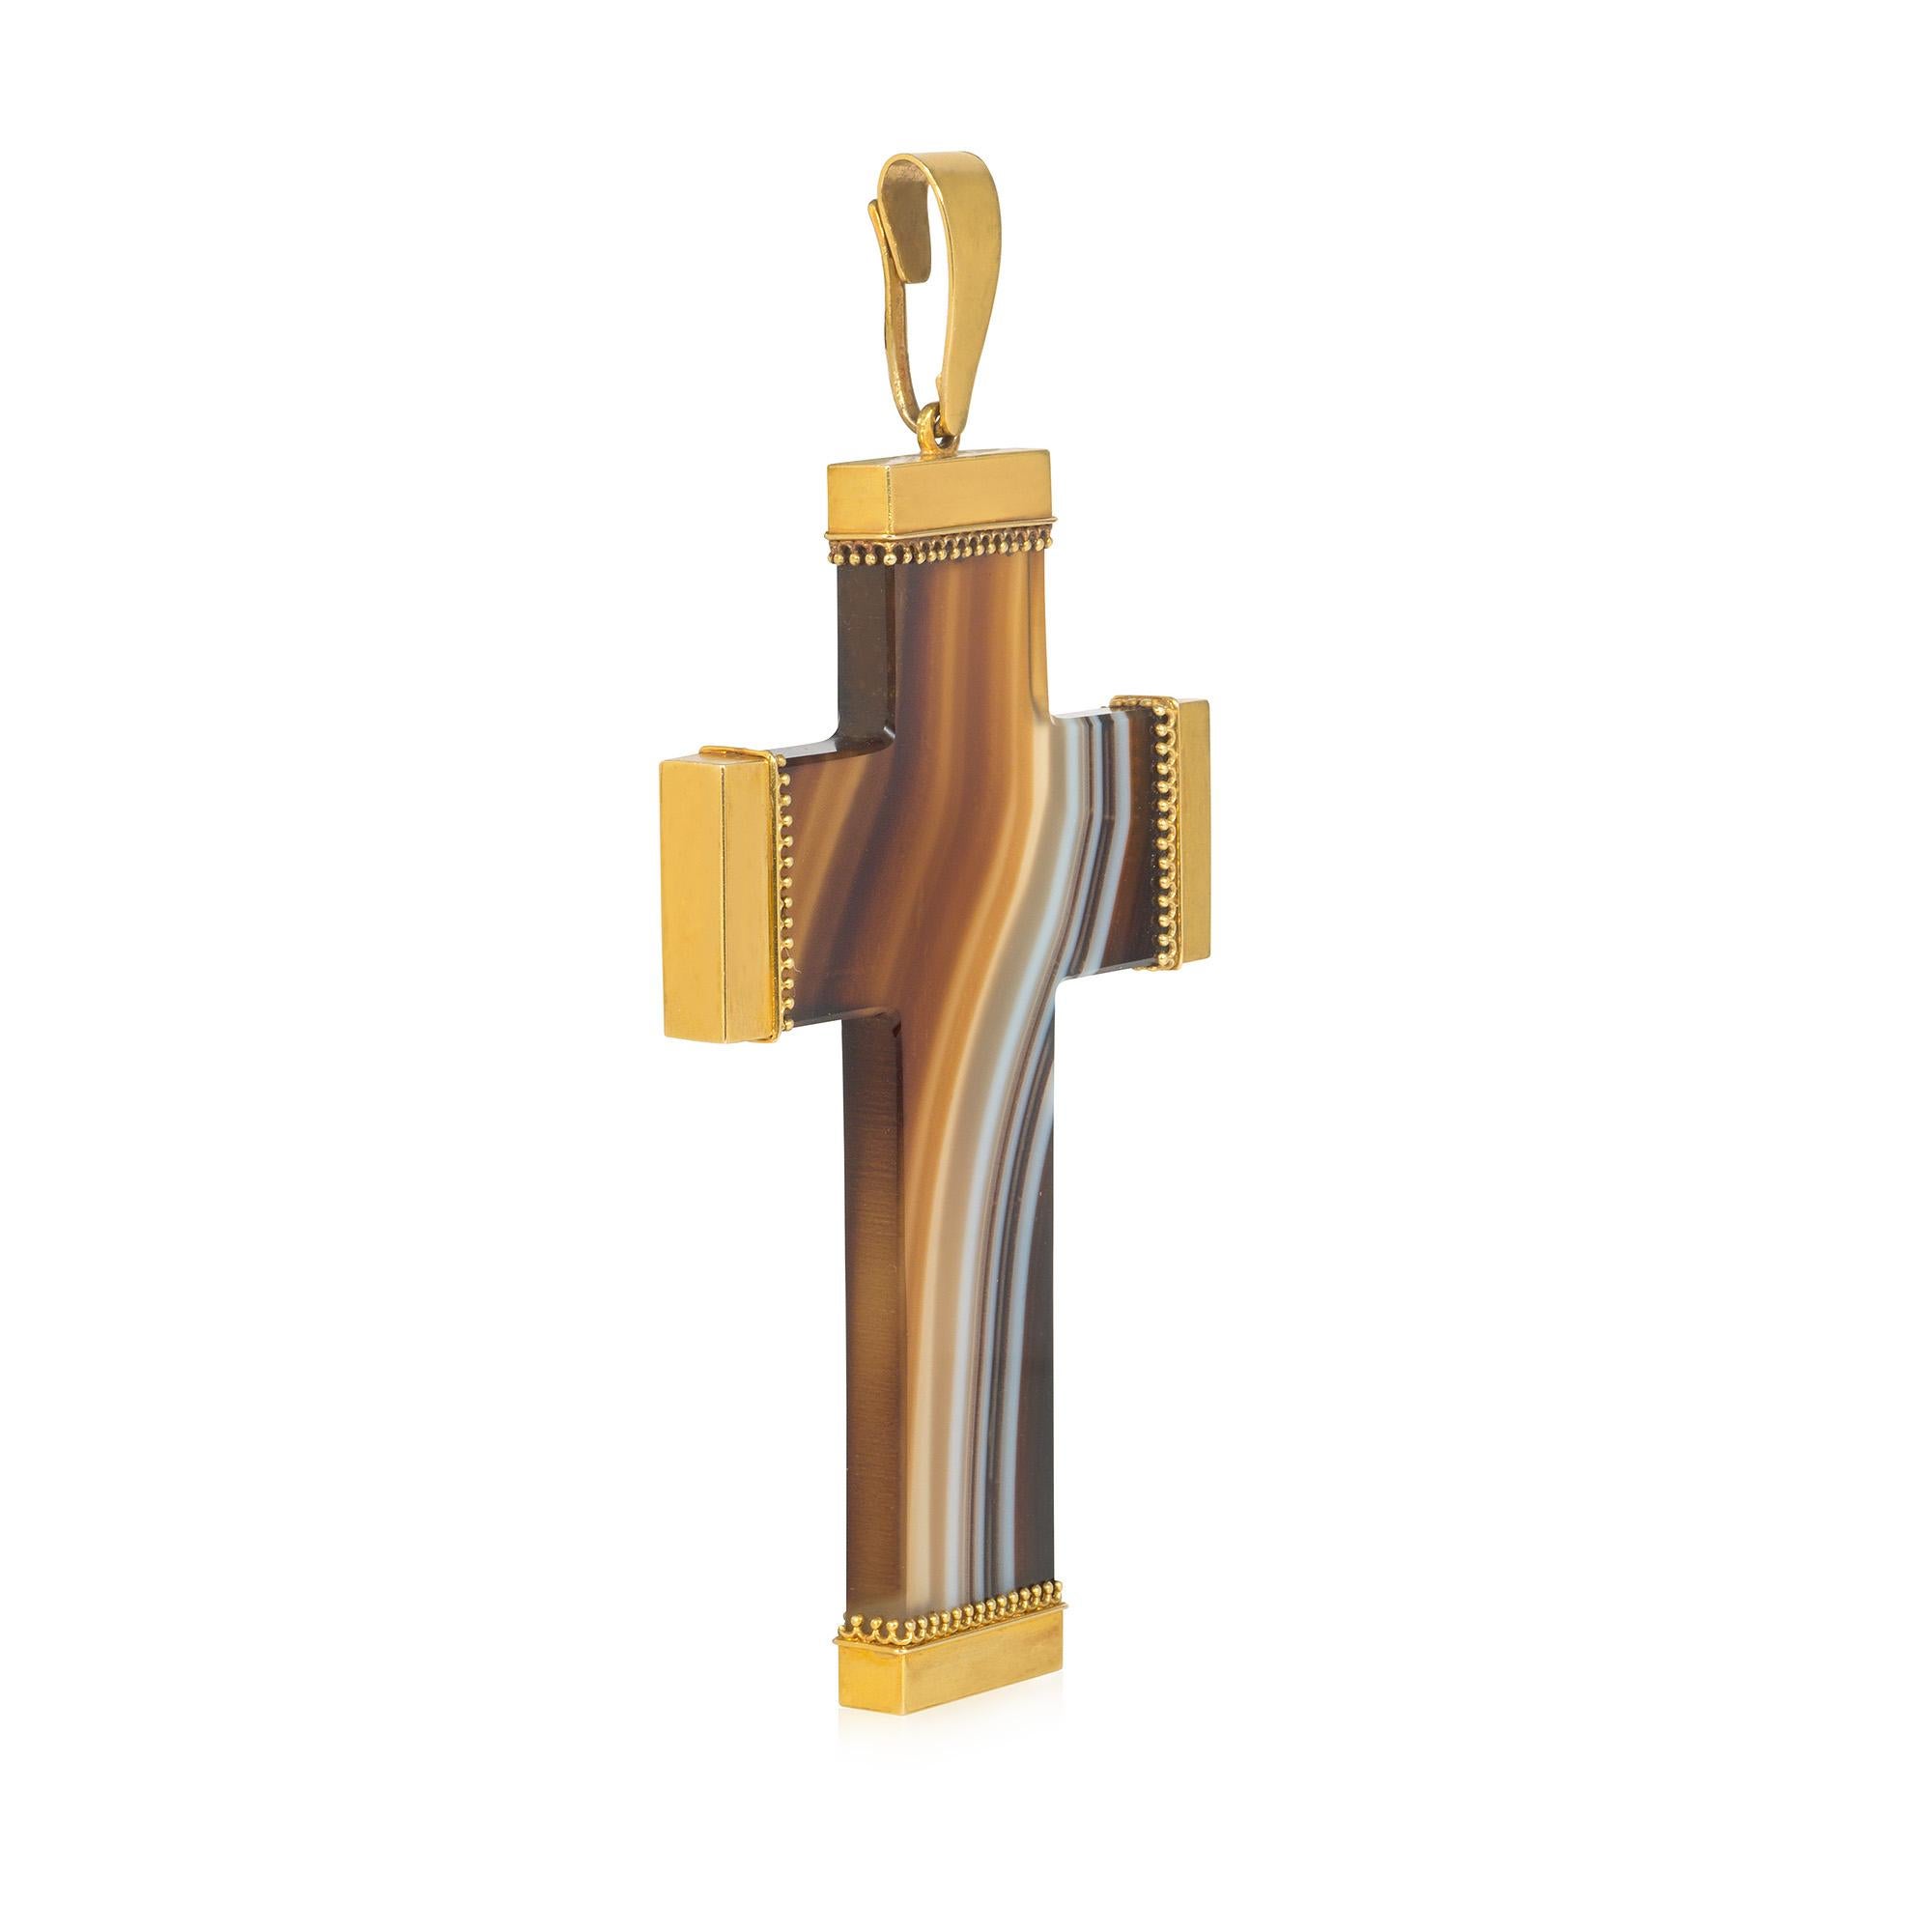 Un grand pendentif en agate et en or de l'époque victorienne, le crucifix en agate à bandes polies avec des terminaux en or perlé et un fermoir en or poli, en 18k.  (Chaîne vendue séparément).

* Lettre d'authenticité incluse
* Livraison gratuite